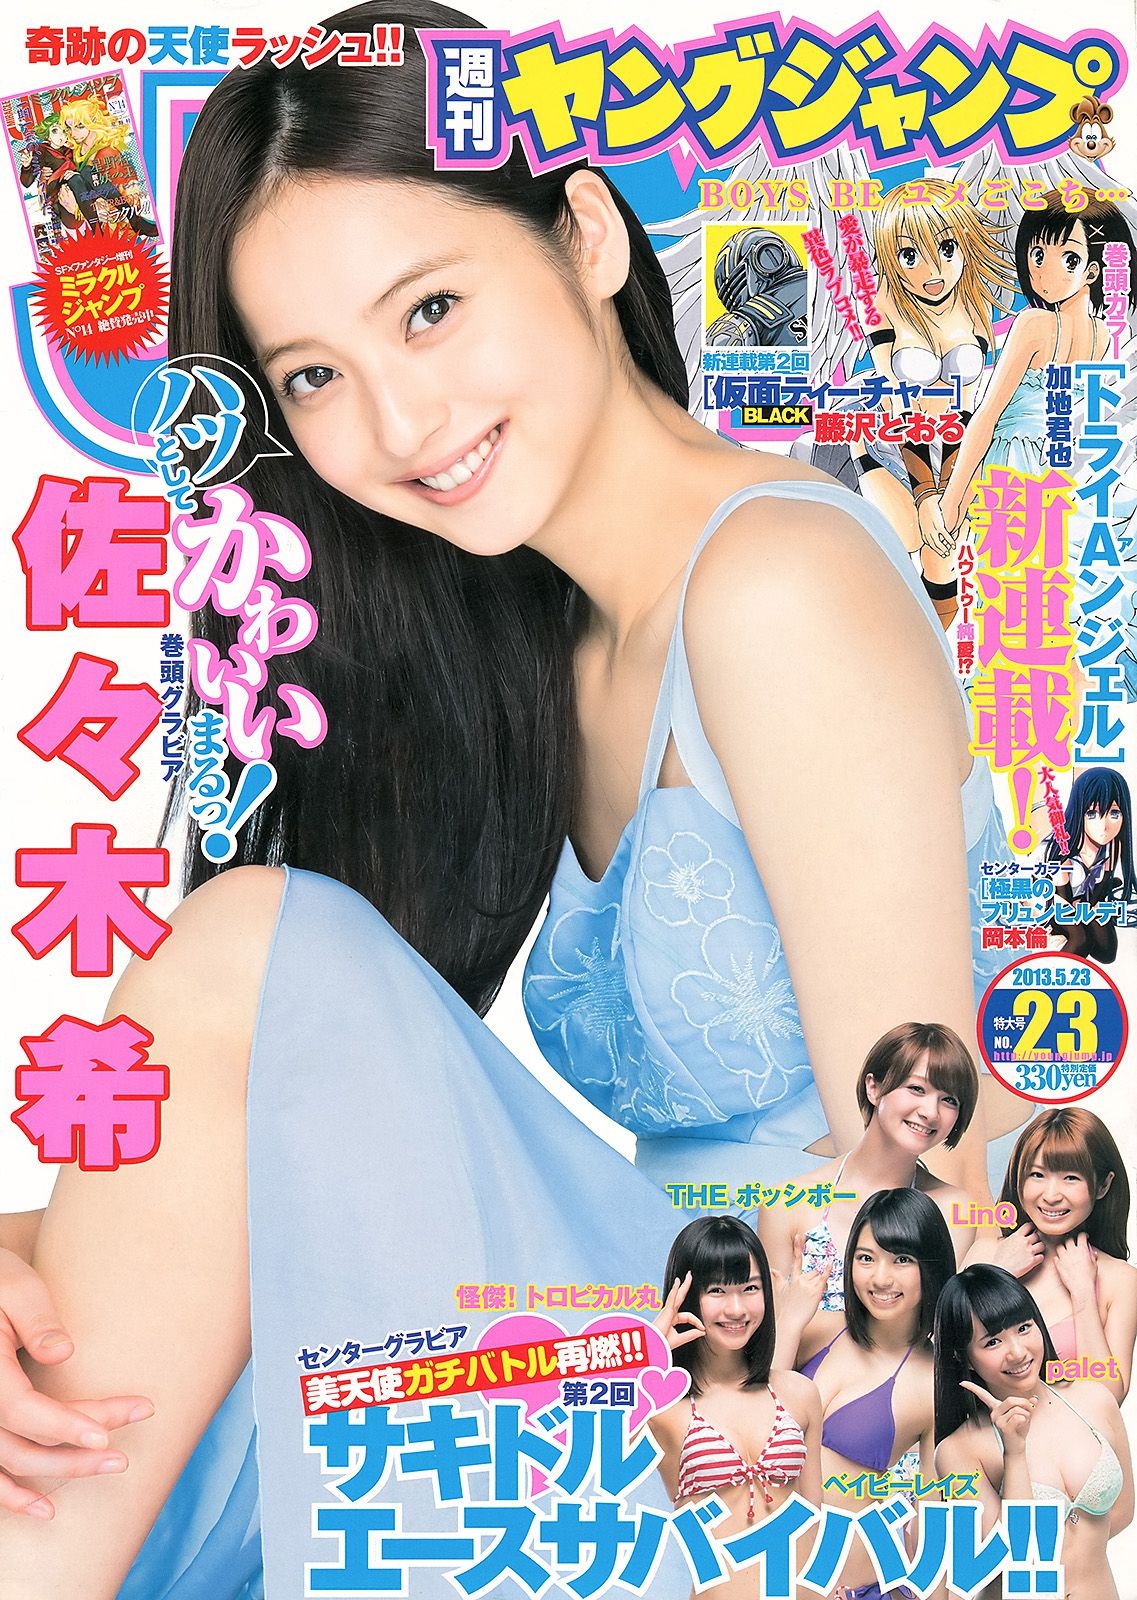 佐々木希 サキドルエースSURVIVAL Season2 [Weekly Young Jump] 2013年No.23 写真杂志  第-1张